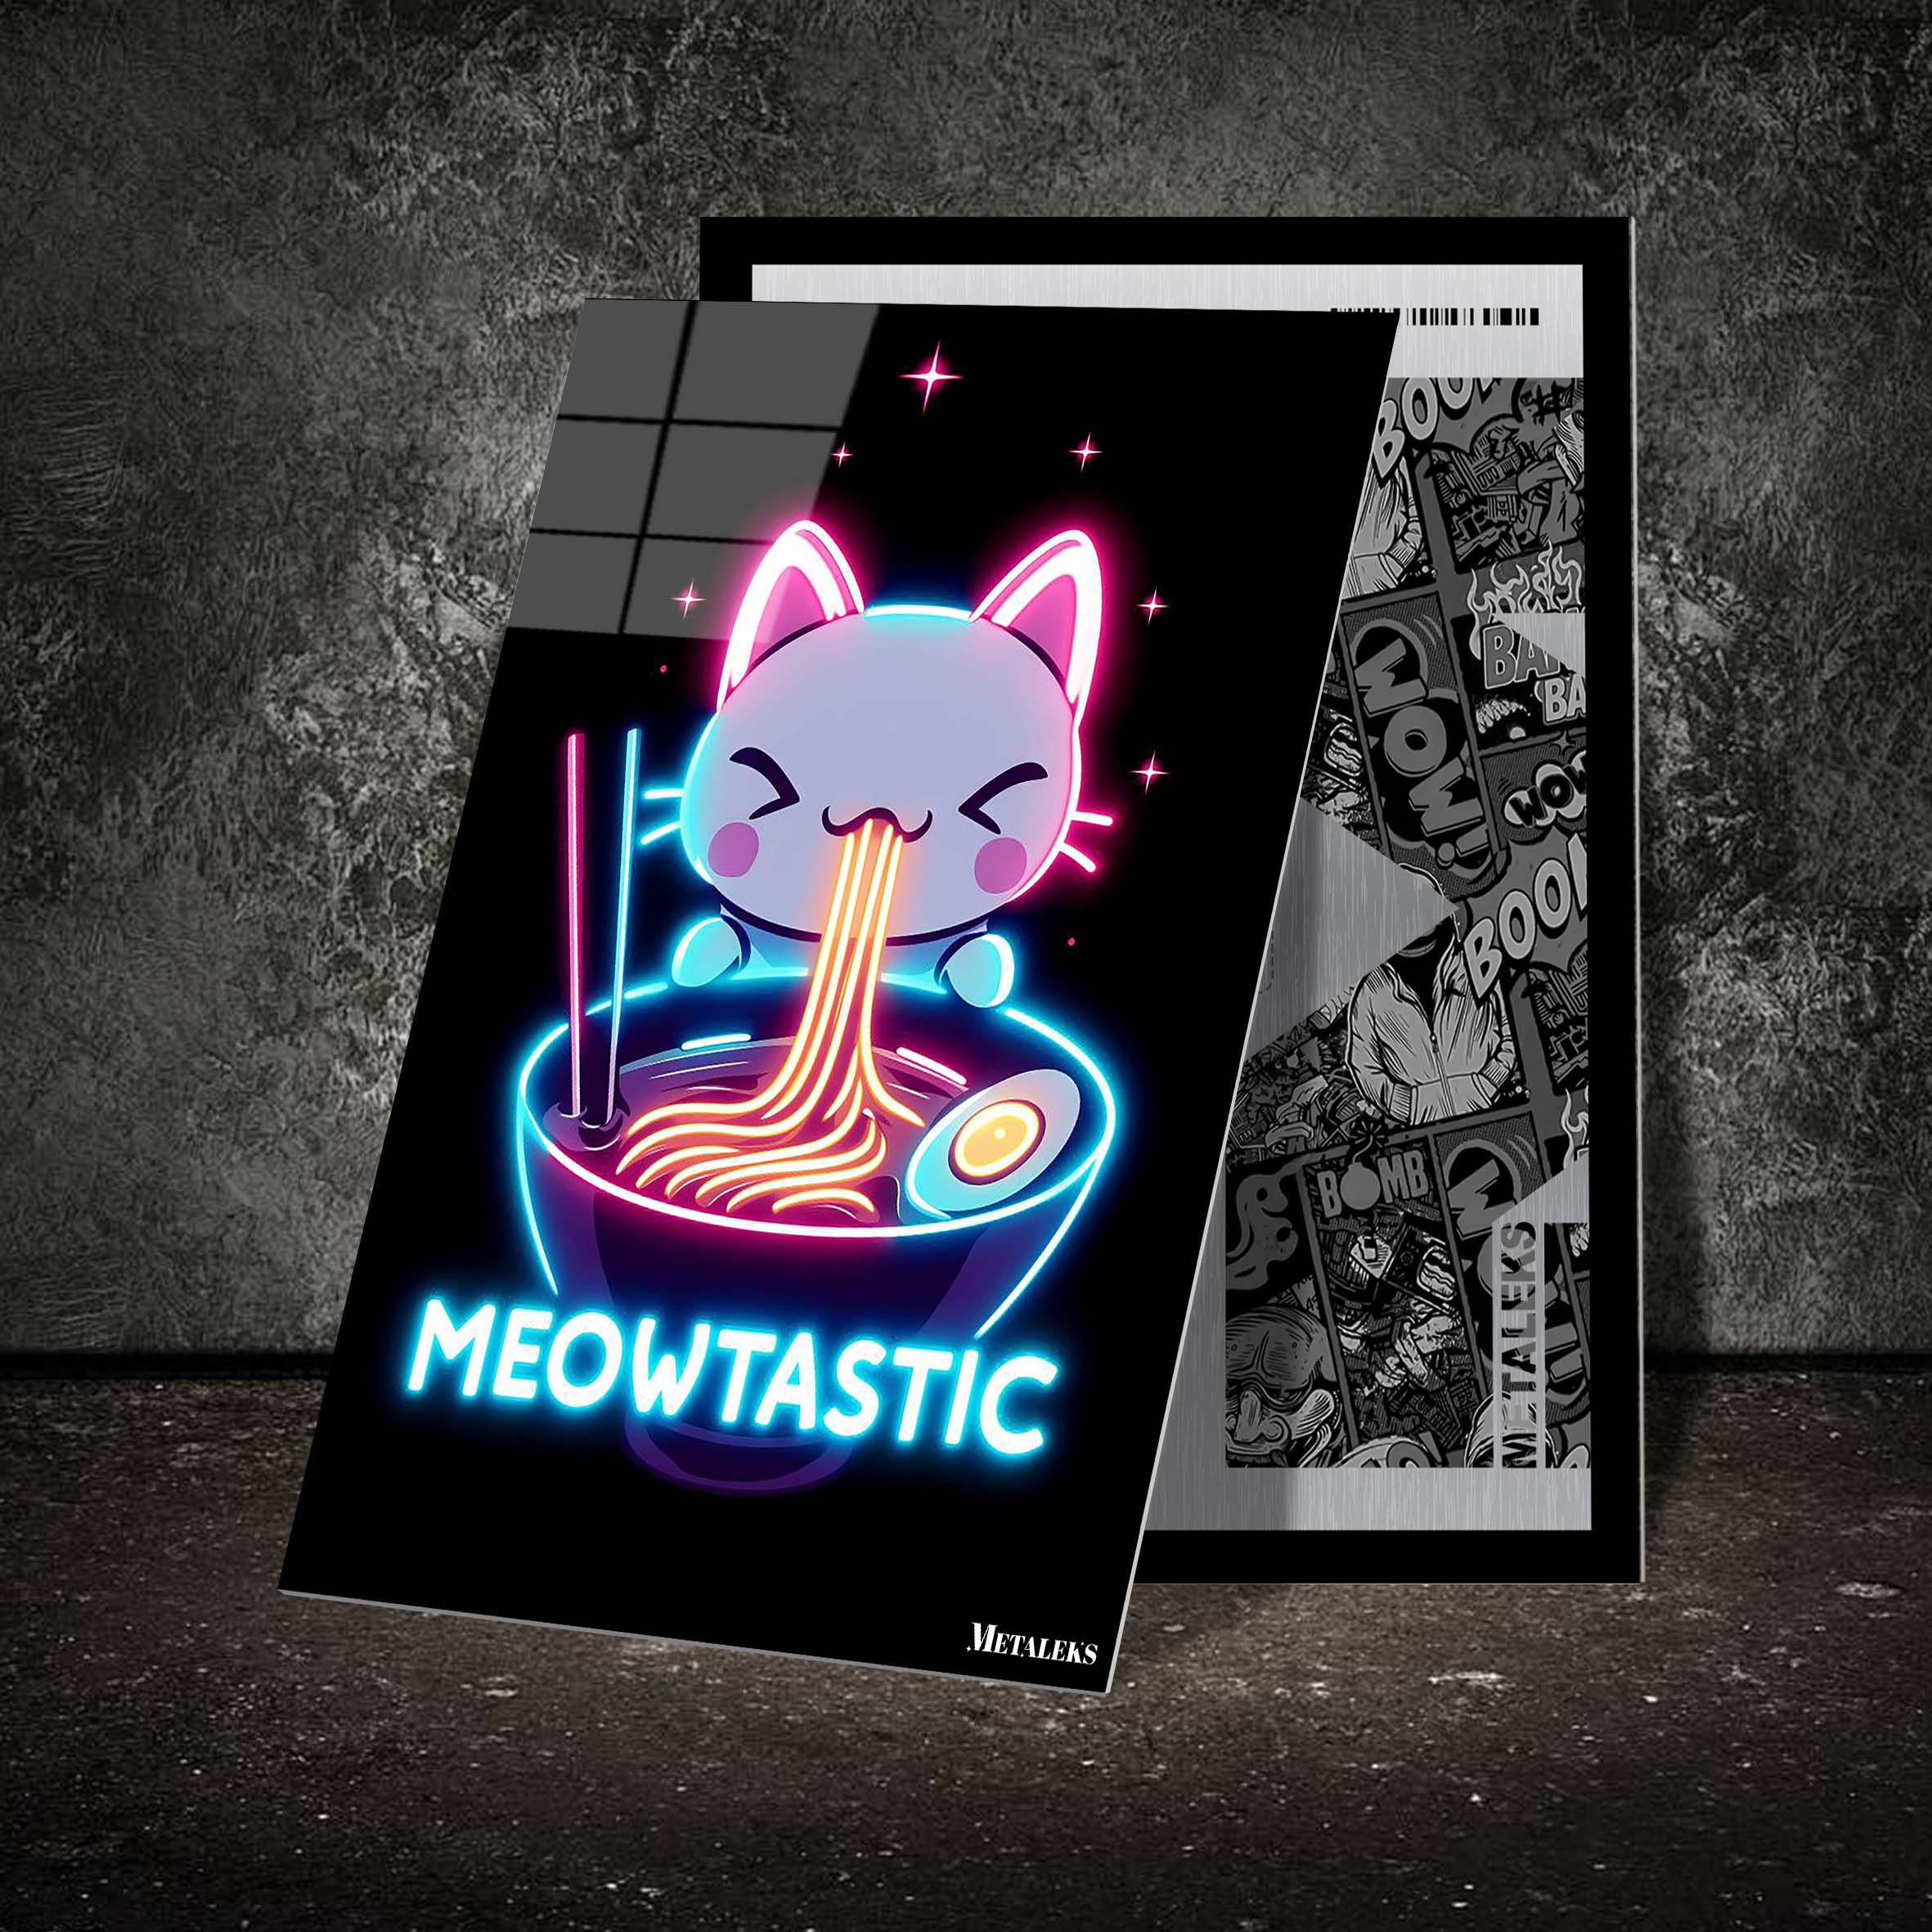 Meowtastic-designed by @Vizio